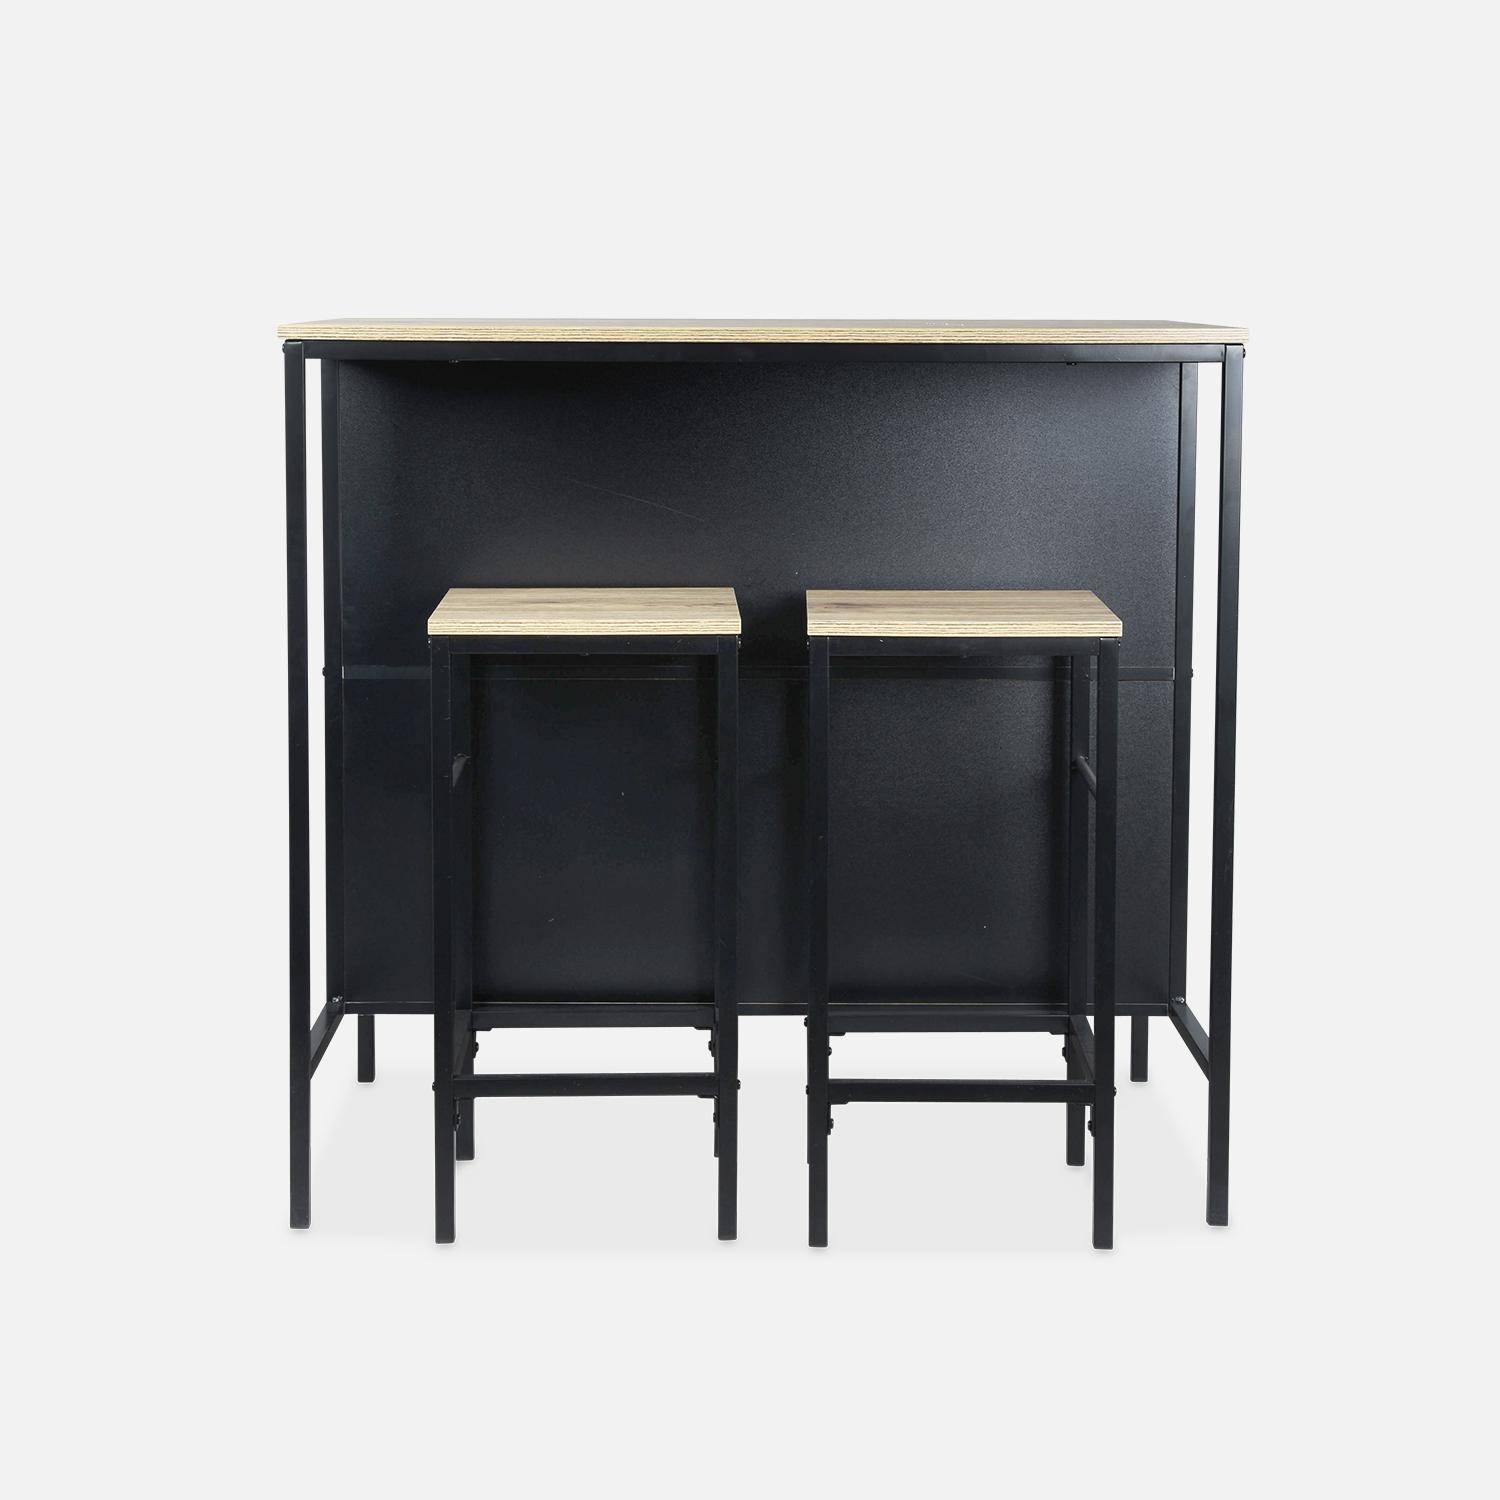 Tavolo alto con due sgabelli e due ripiani, decoro in legno e metallo, soppalco, L 100 x P 60 x H 95 cm Photo4